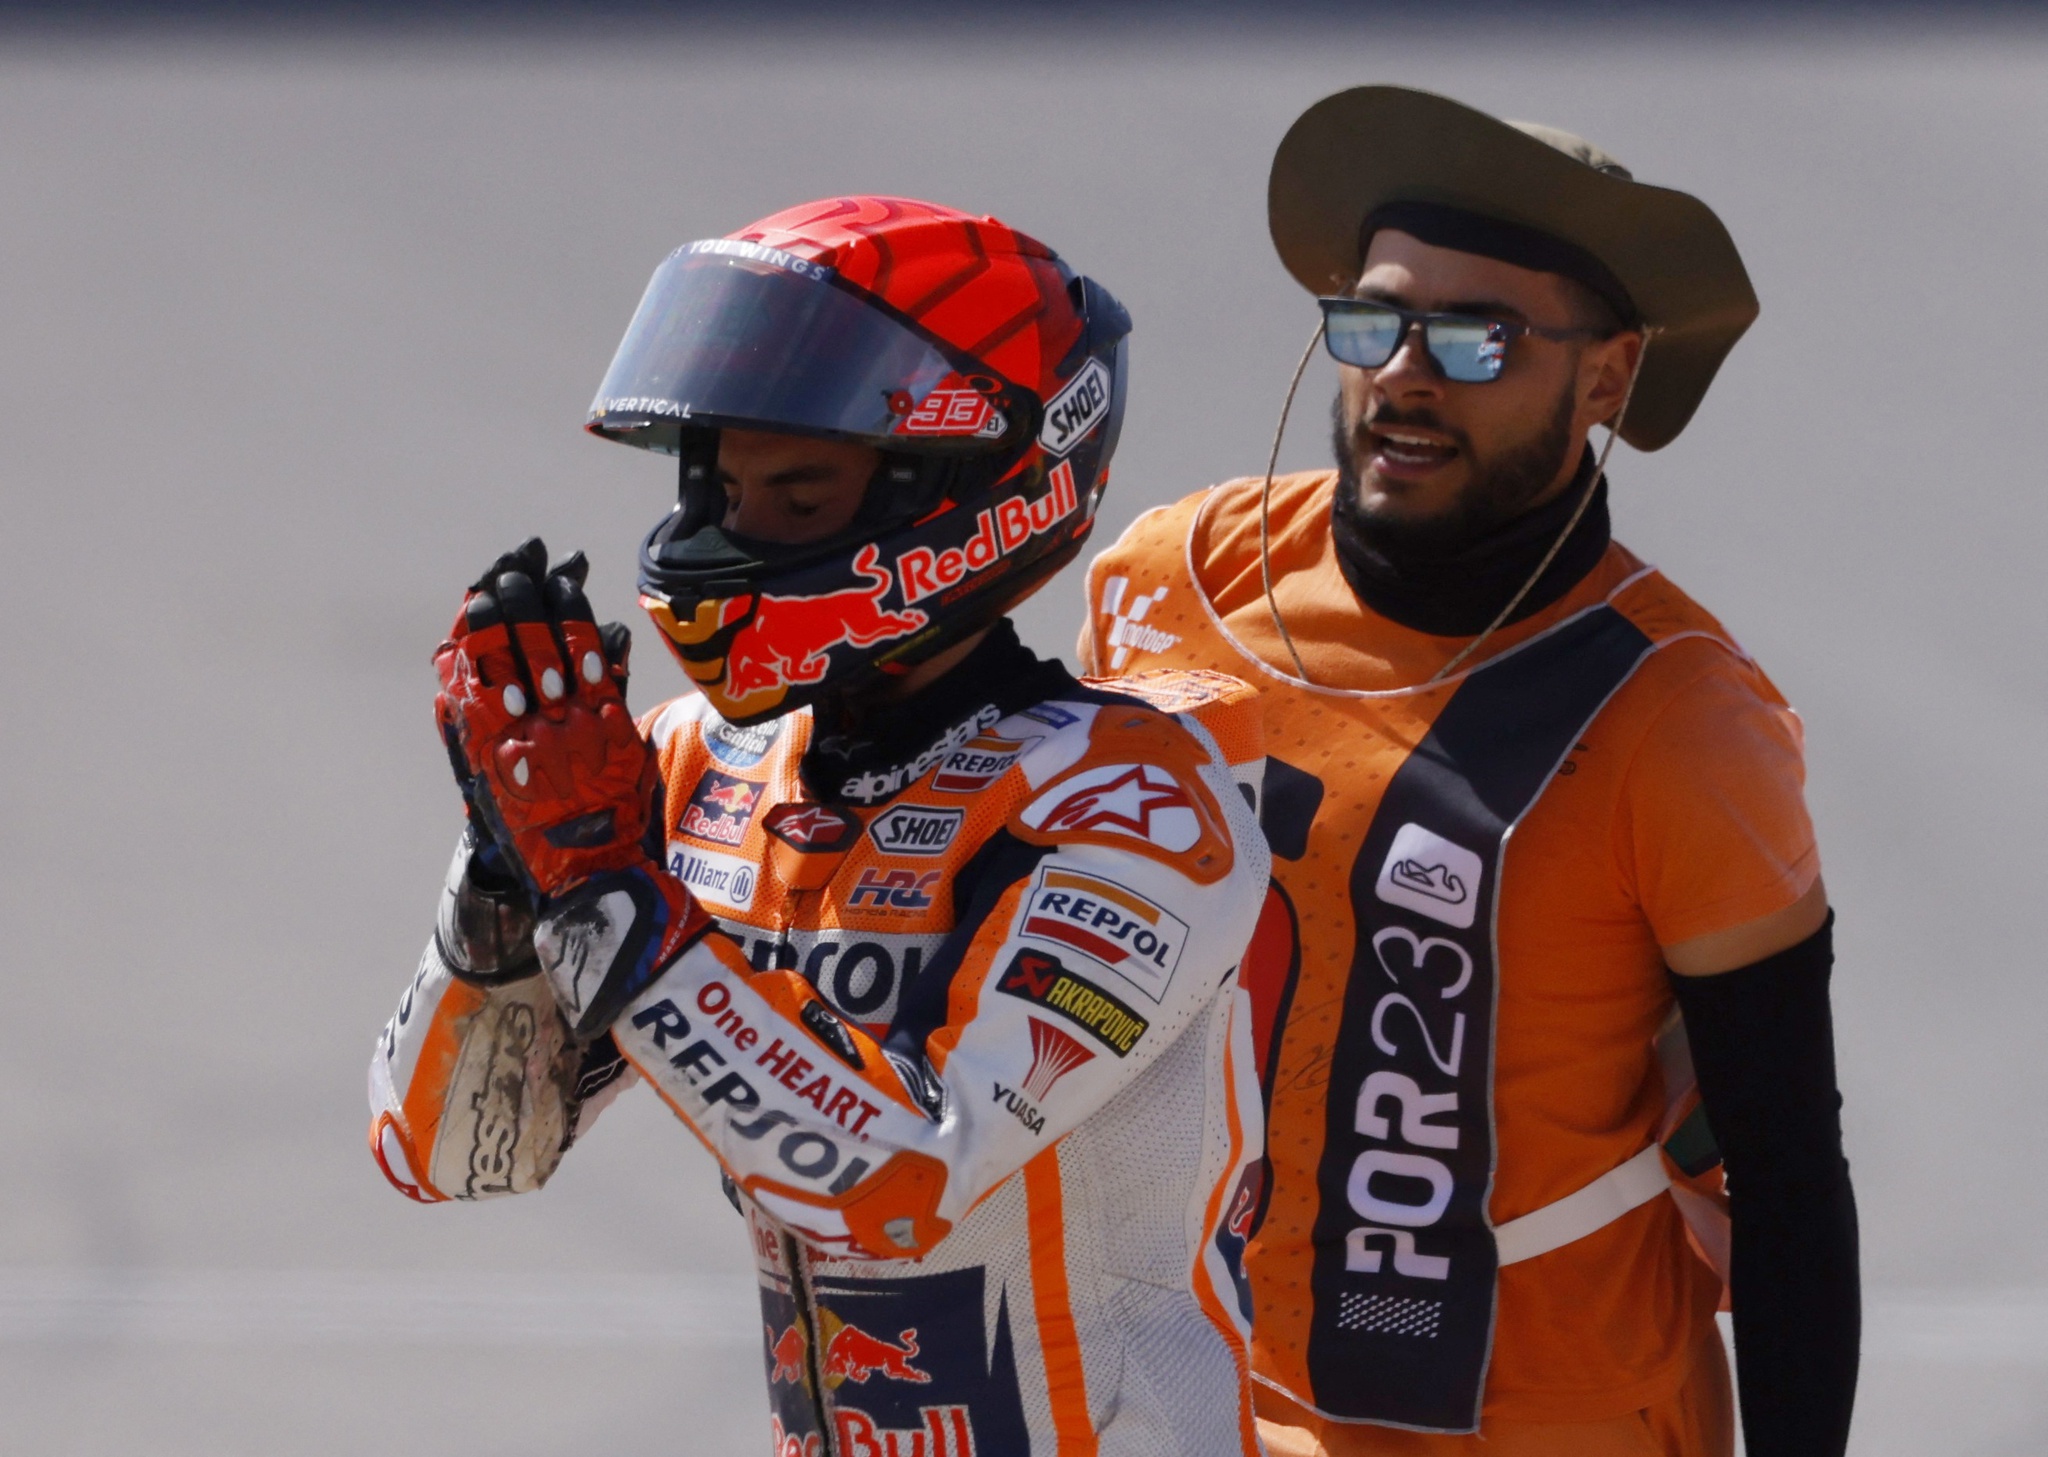 MotoGP: Miguel Oliveira é abalroado e abandona corrida em Portimão, Motociclismo